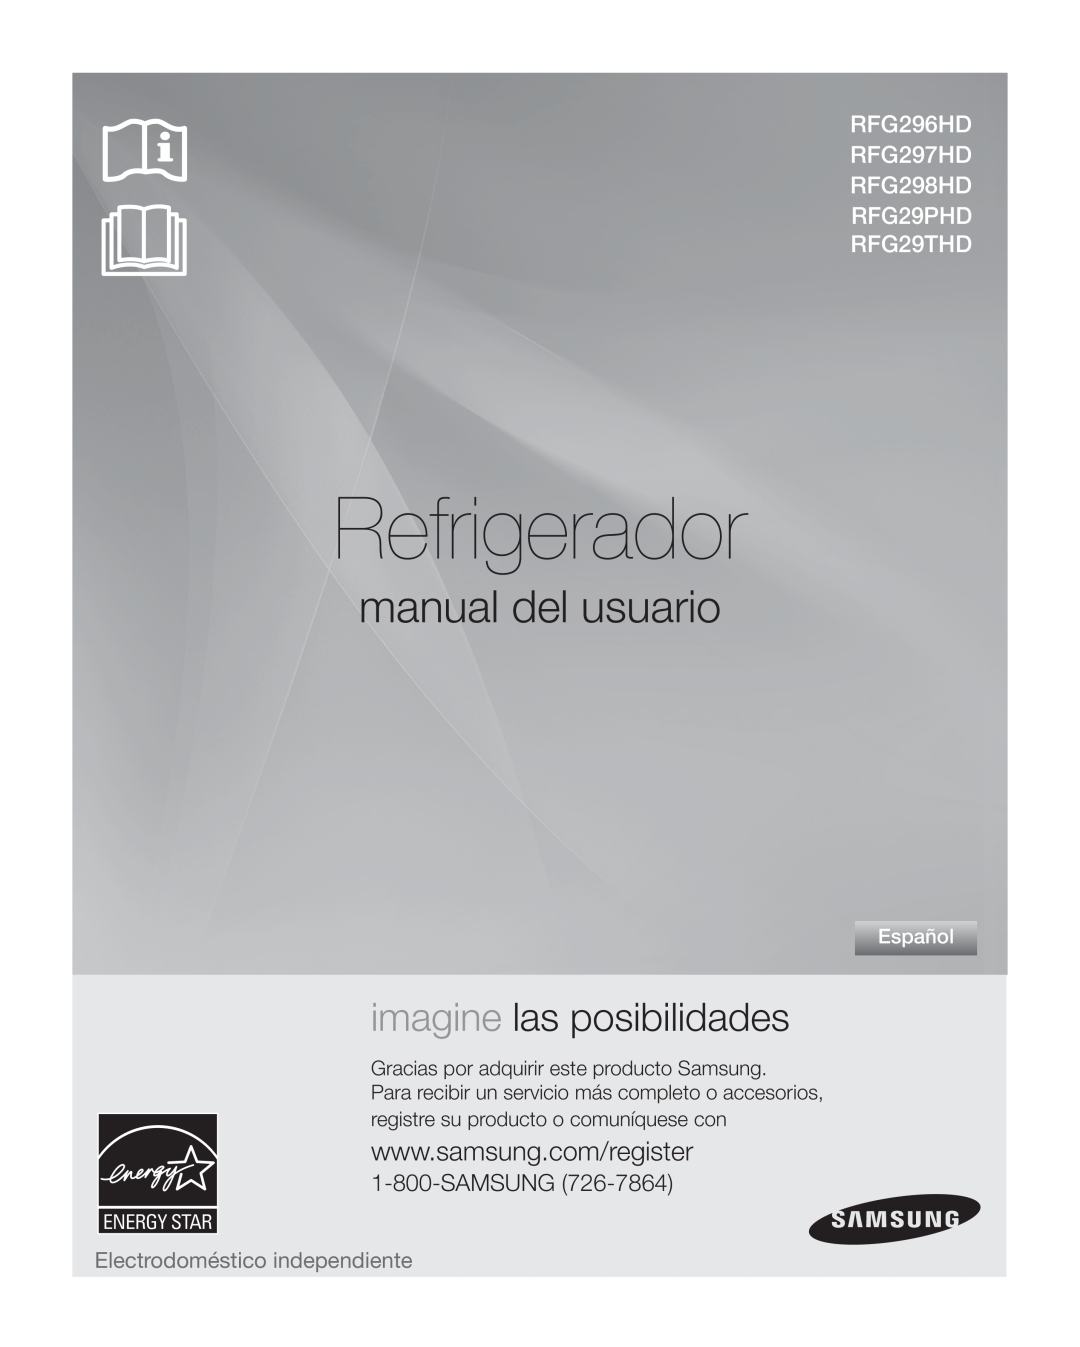 Samsung RFG29THD Refrigerador, manual del usuario, imagine las posibilidades, Electrodoméstico independiente, Samsung 